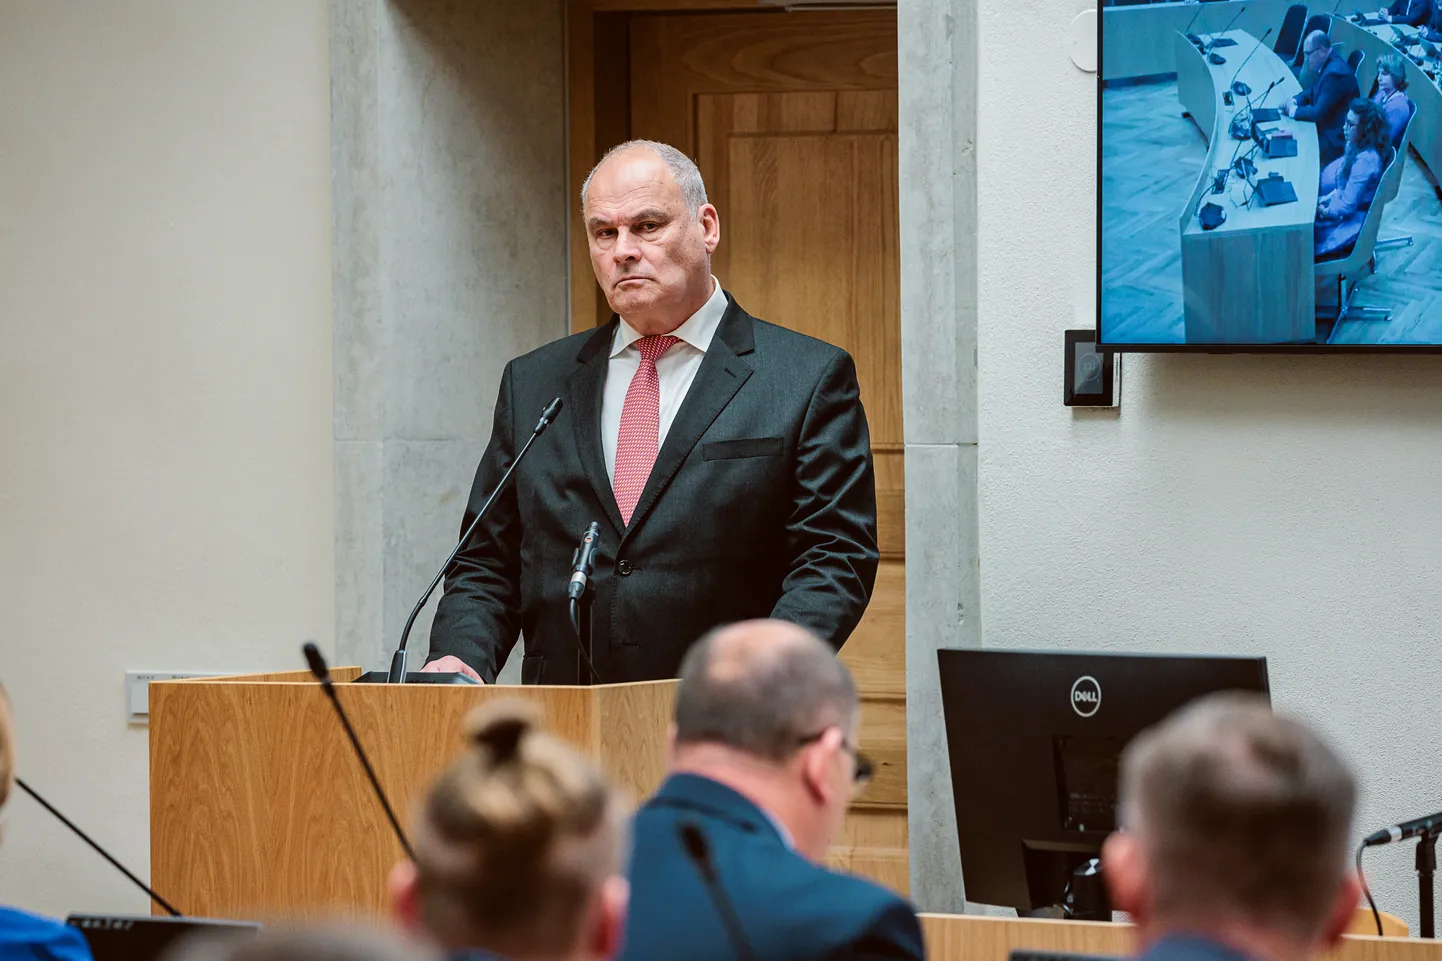 5. oktoobril Narva uueks linnapeaks valitud Jaan Toots asub ametisse kohe pärast seda, kui volikogu on linnavalitsuse uue koosseisu kinnitanud. Seda on kavas teha 19. oktoobril.